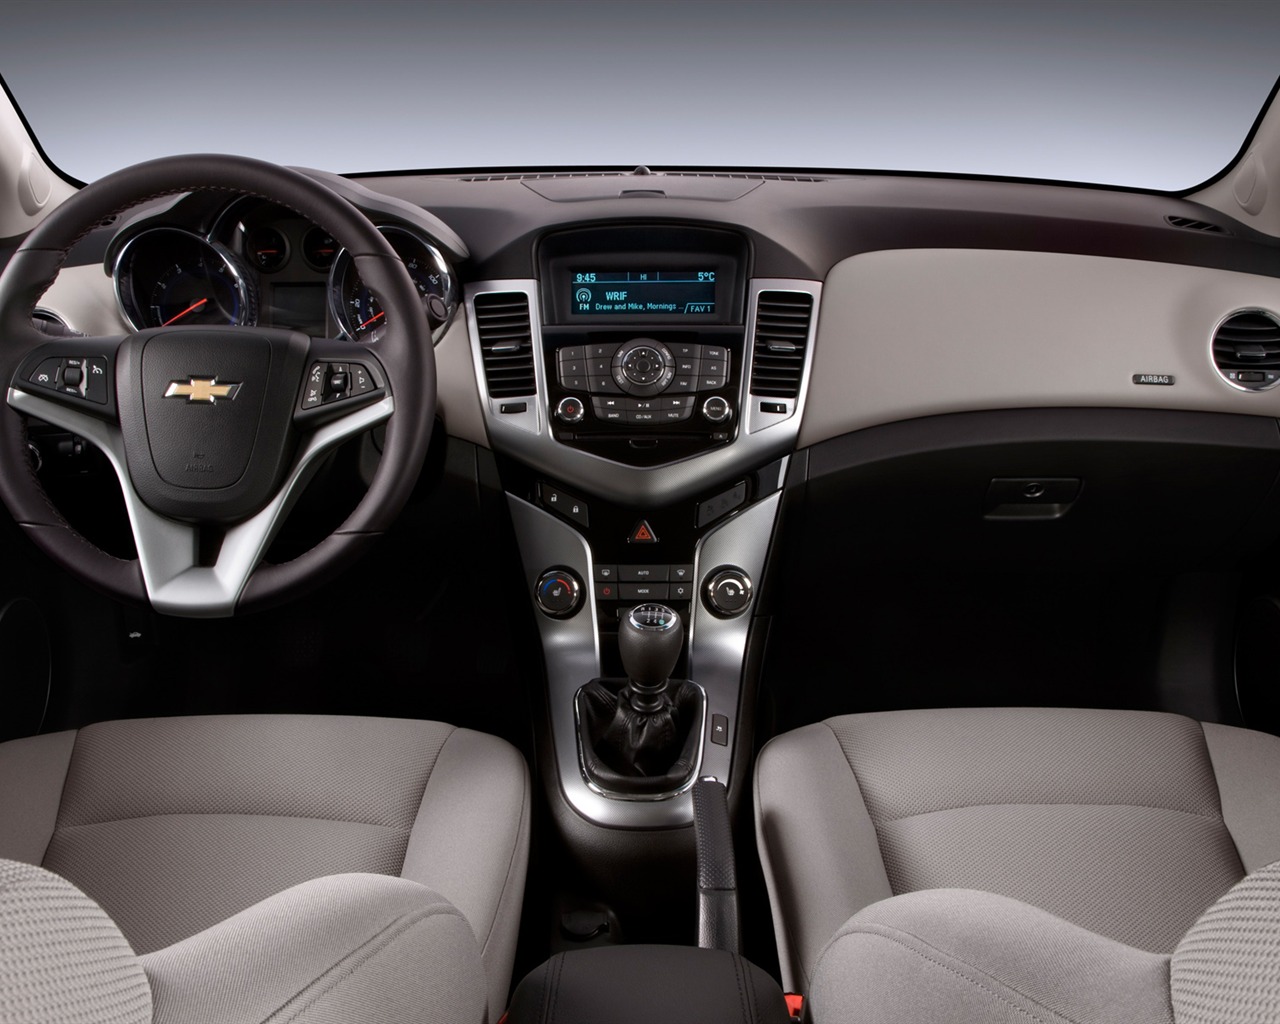 Chevrolet Cruze ECO - 2011 fondos de escritorio de alta definición #8 - 1280x1024